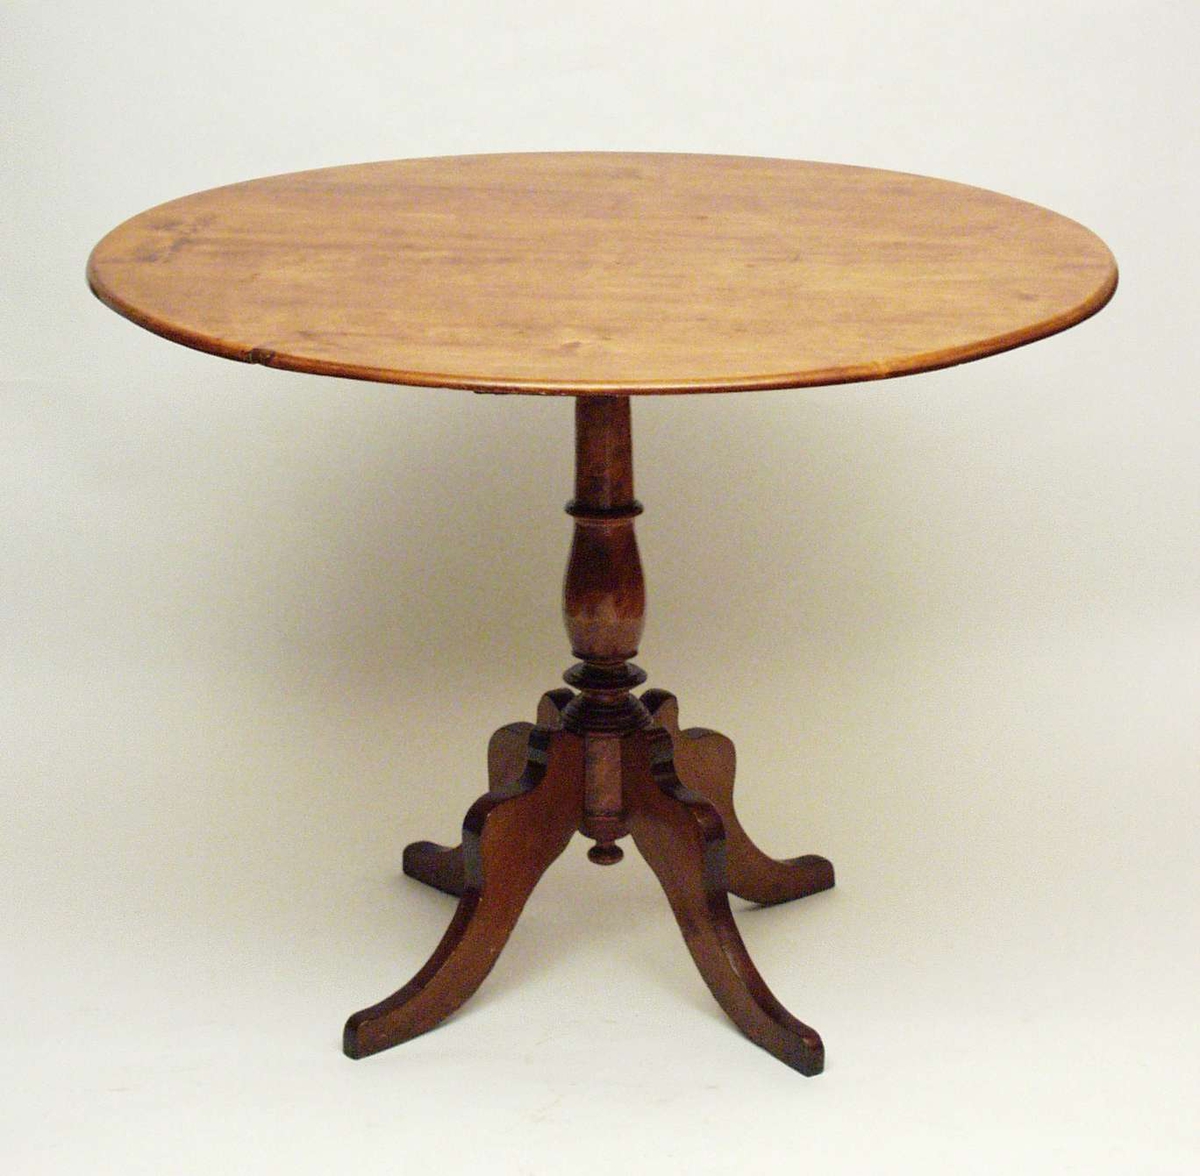 Bord i bjørk med rund plate, båret av en rund, profilert midtsøyle. Til søylen er det festet fire ben som svinger utover